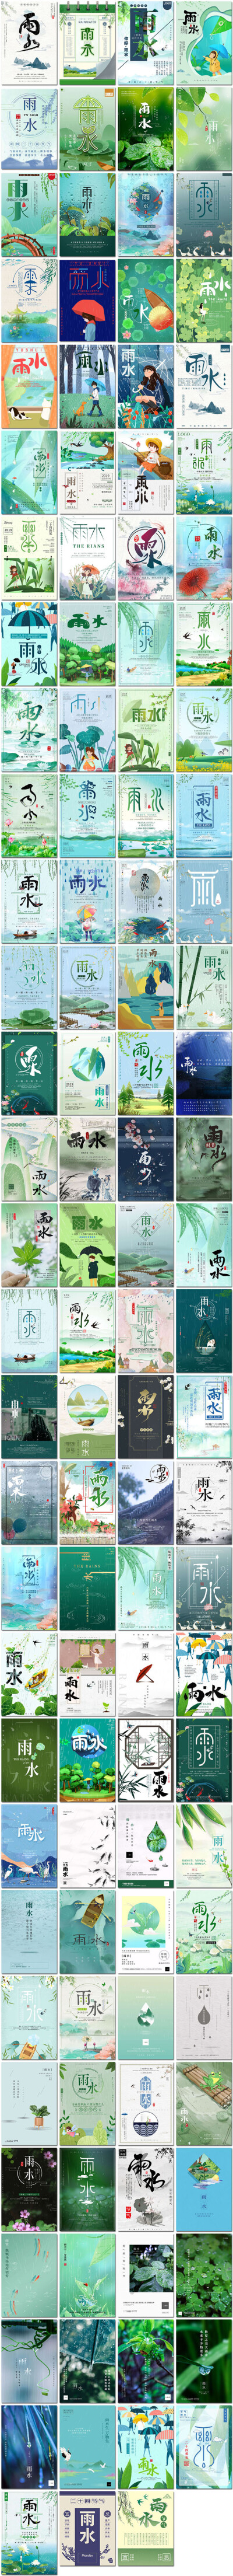 雨水节气中国传统节日文化雨水雨滴雨伞下雨海报设计psd模板素材